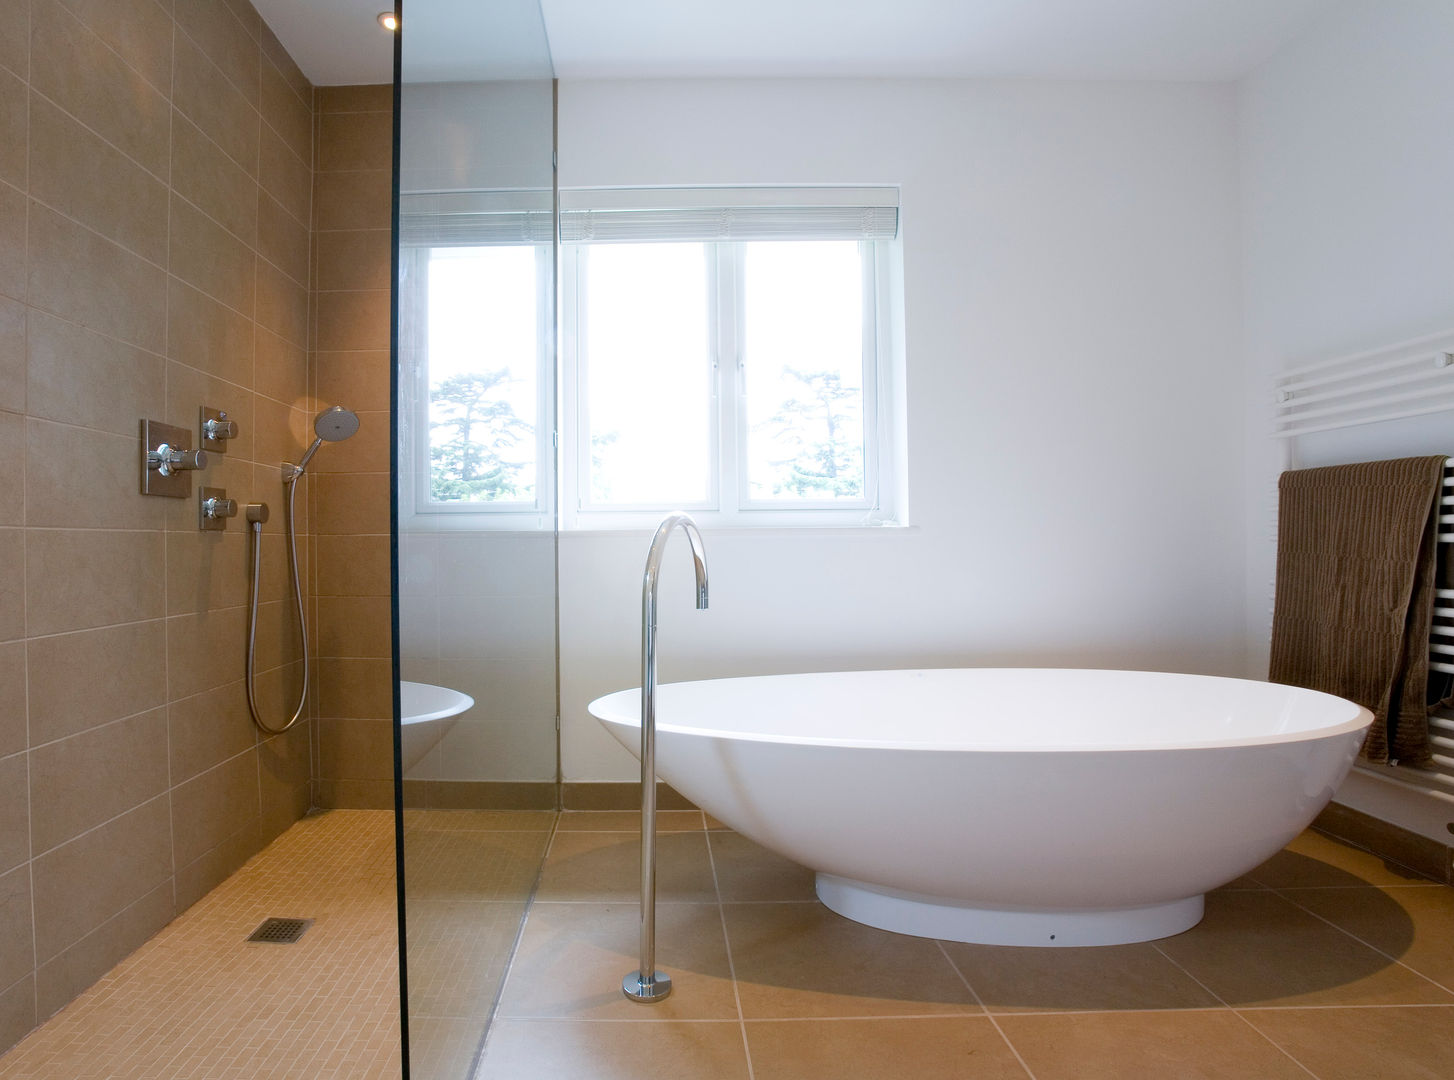 Casa-de-banho Architect Your Home Casas de banho modernas